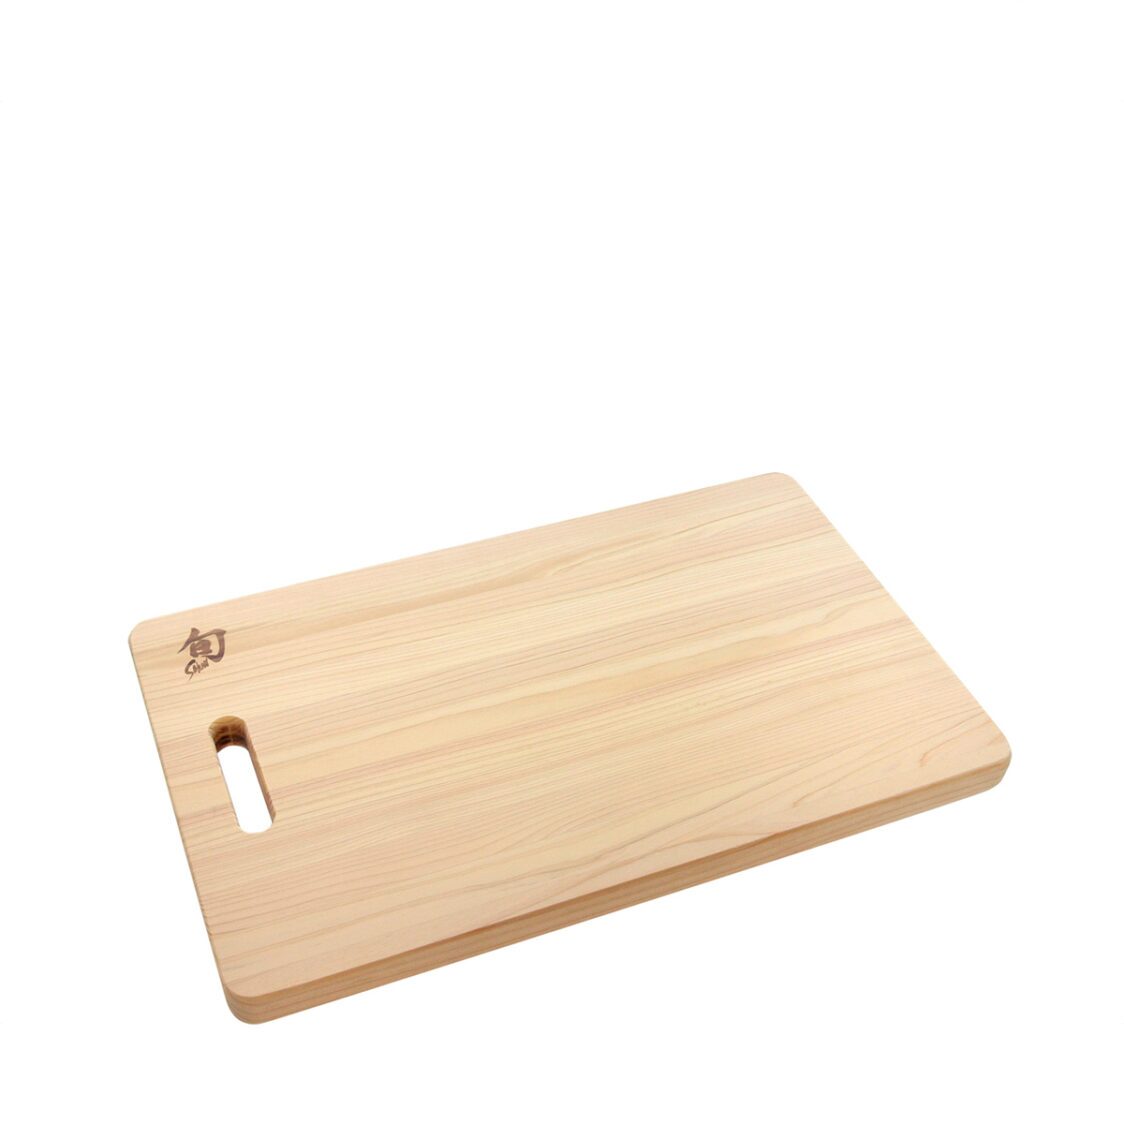 Kai Shun Hinoki Cutting Board - Grip Hole - L Size Made In Japan DM-0814